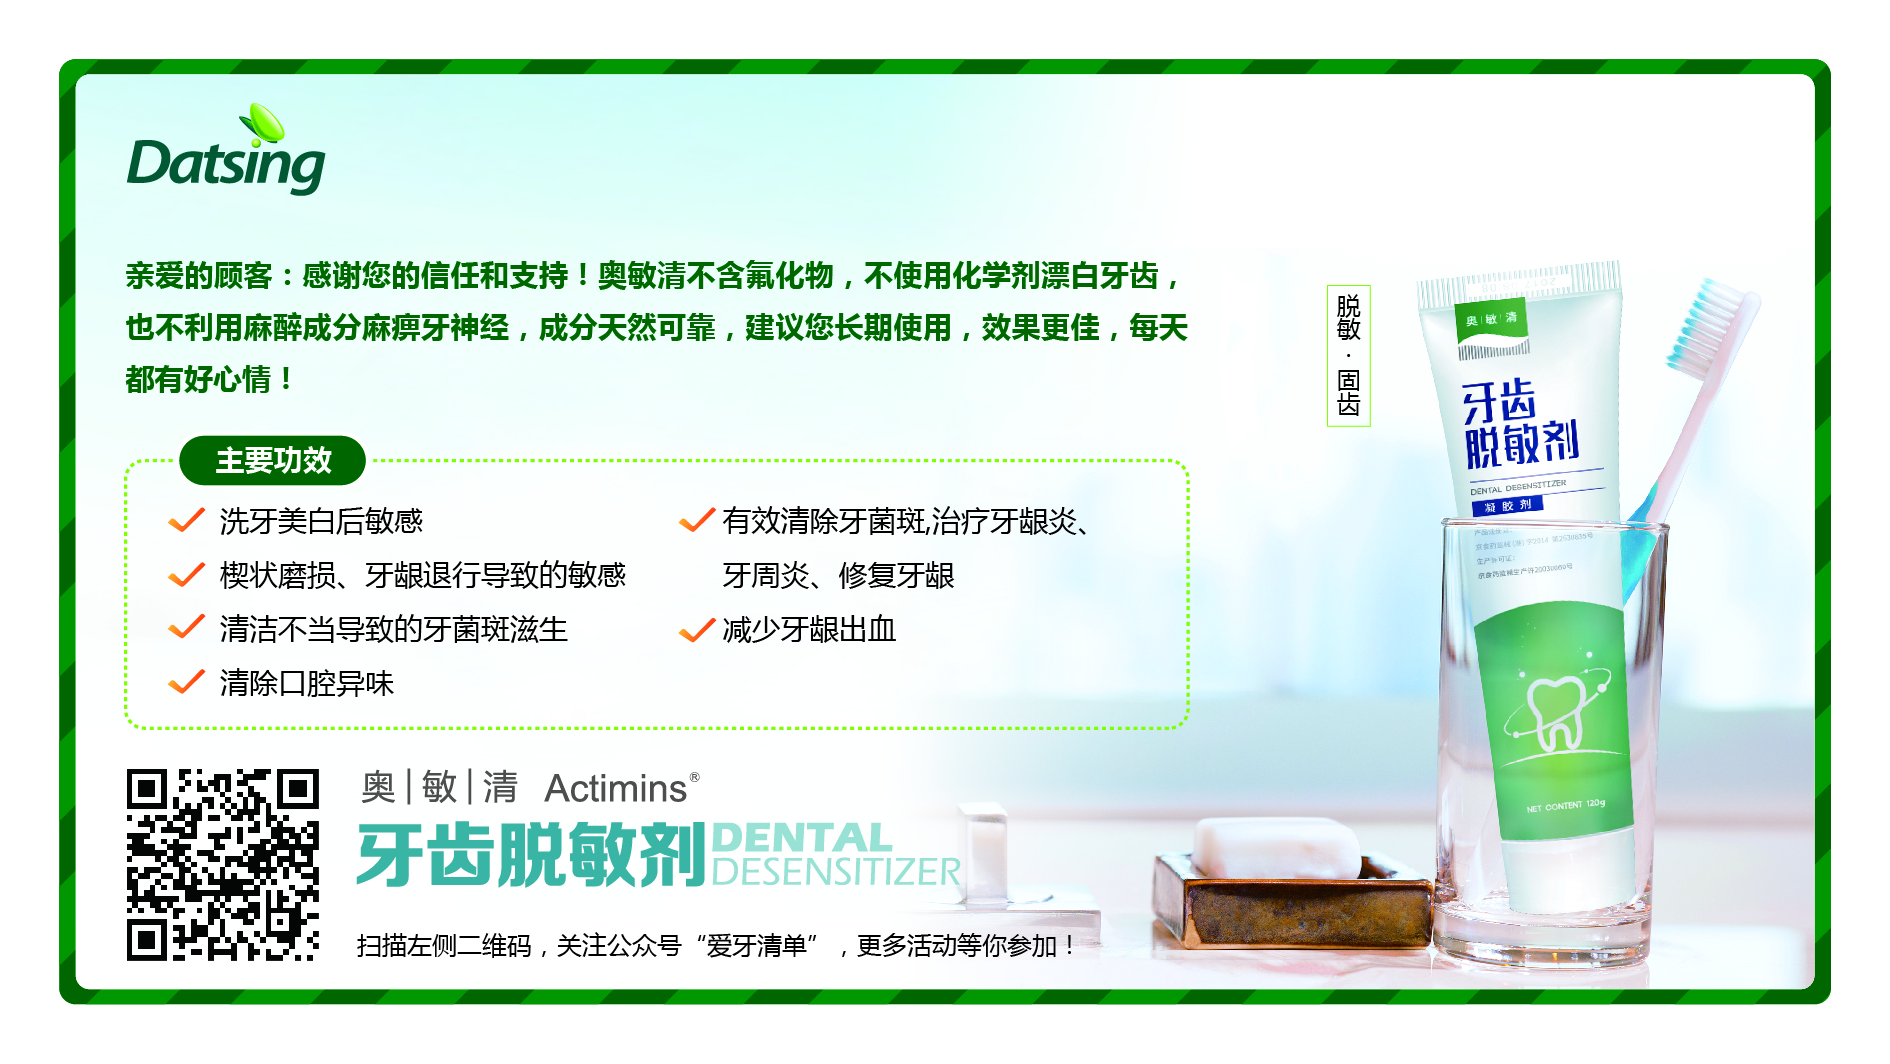 我们推荐预防龋齿专业牙膏_龋齿图片相关-北京大清西格科技有限公司